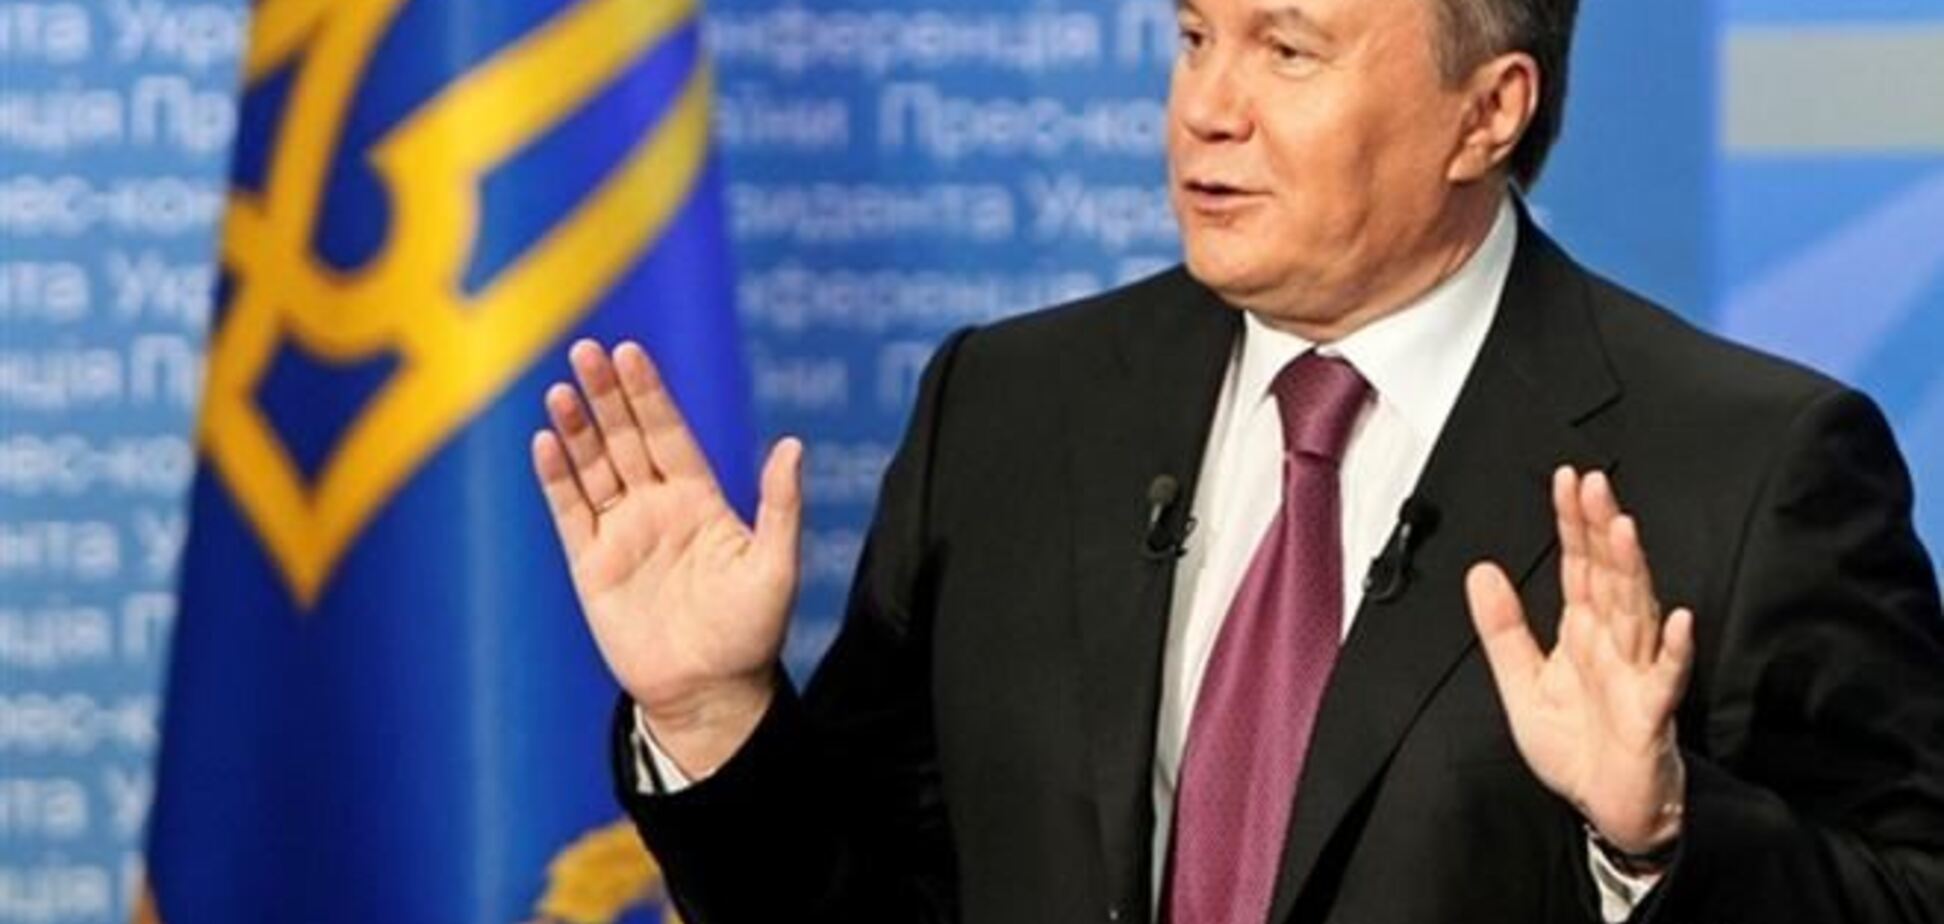 Візит на вільнюський саміт залишається в плані Януковича